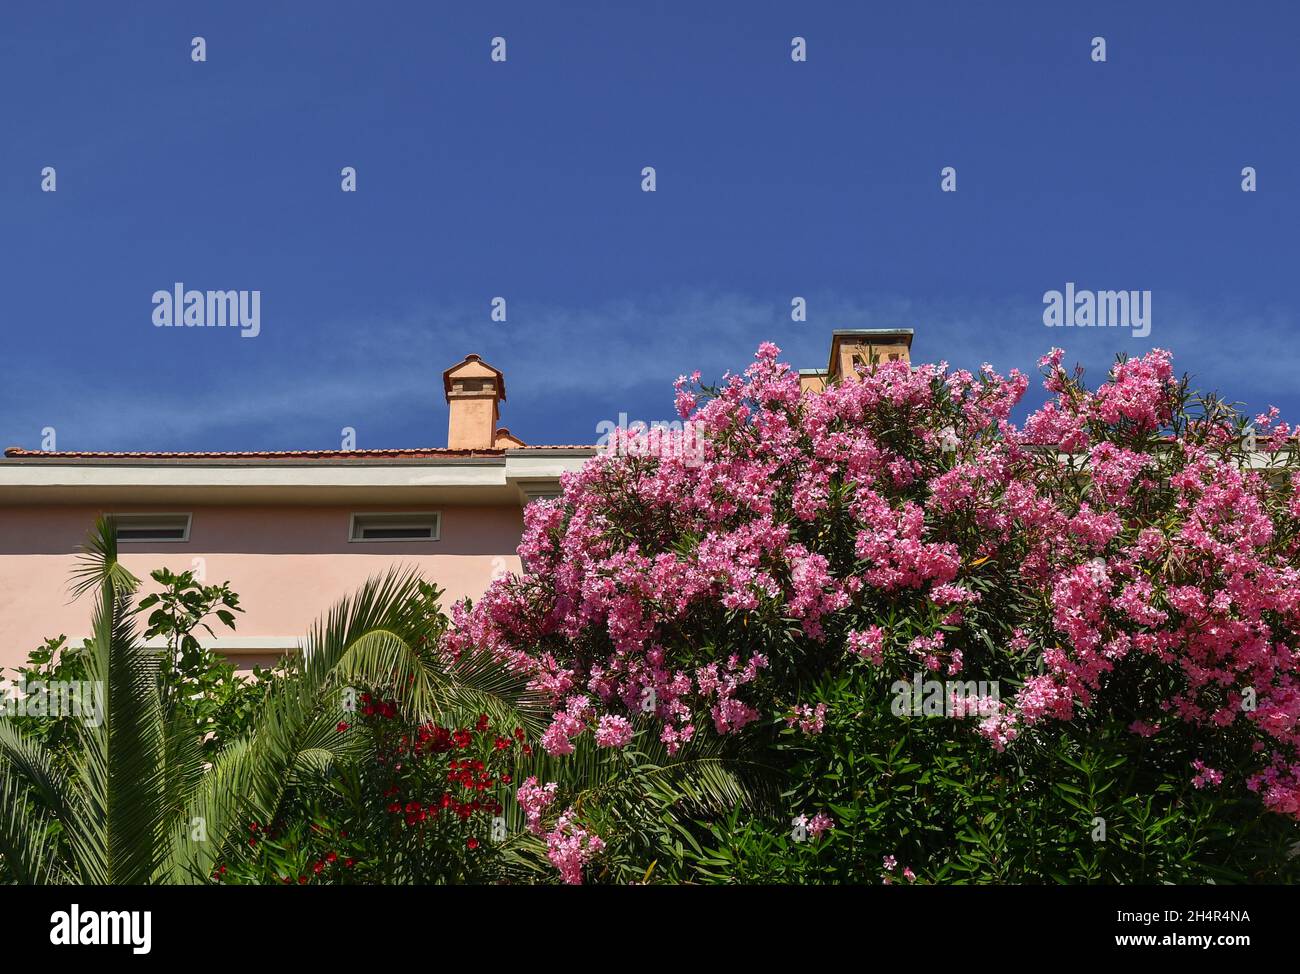 Floreciendo adelfas y palmeras en frente de una casa de vacaciones contra el cielo azul en verano, Toscana, Italia Foto de stock